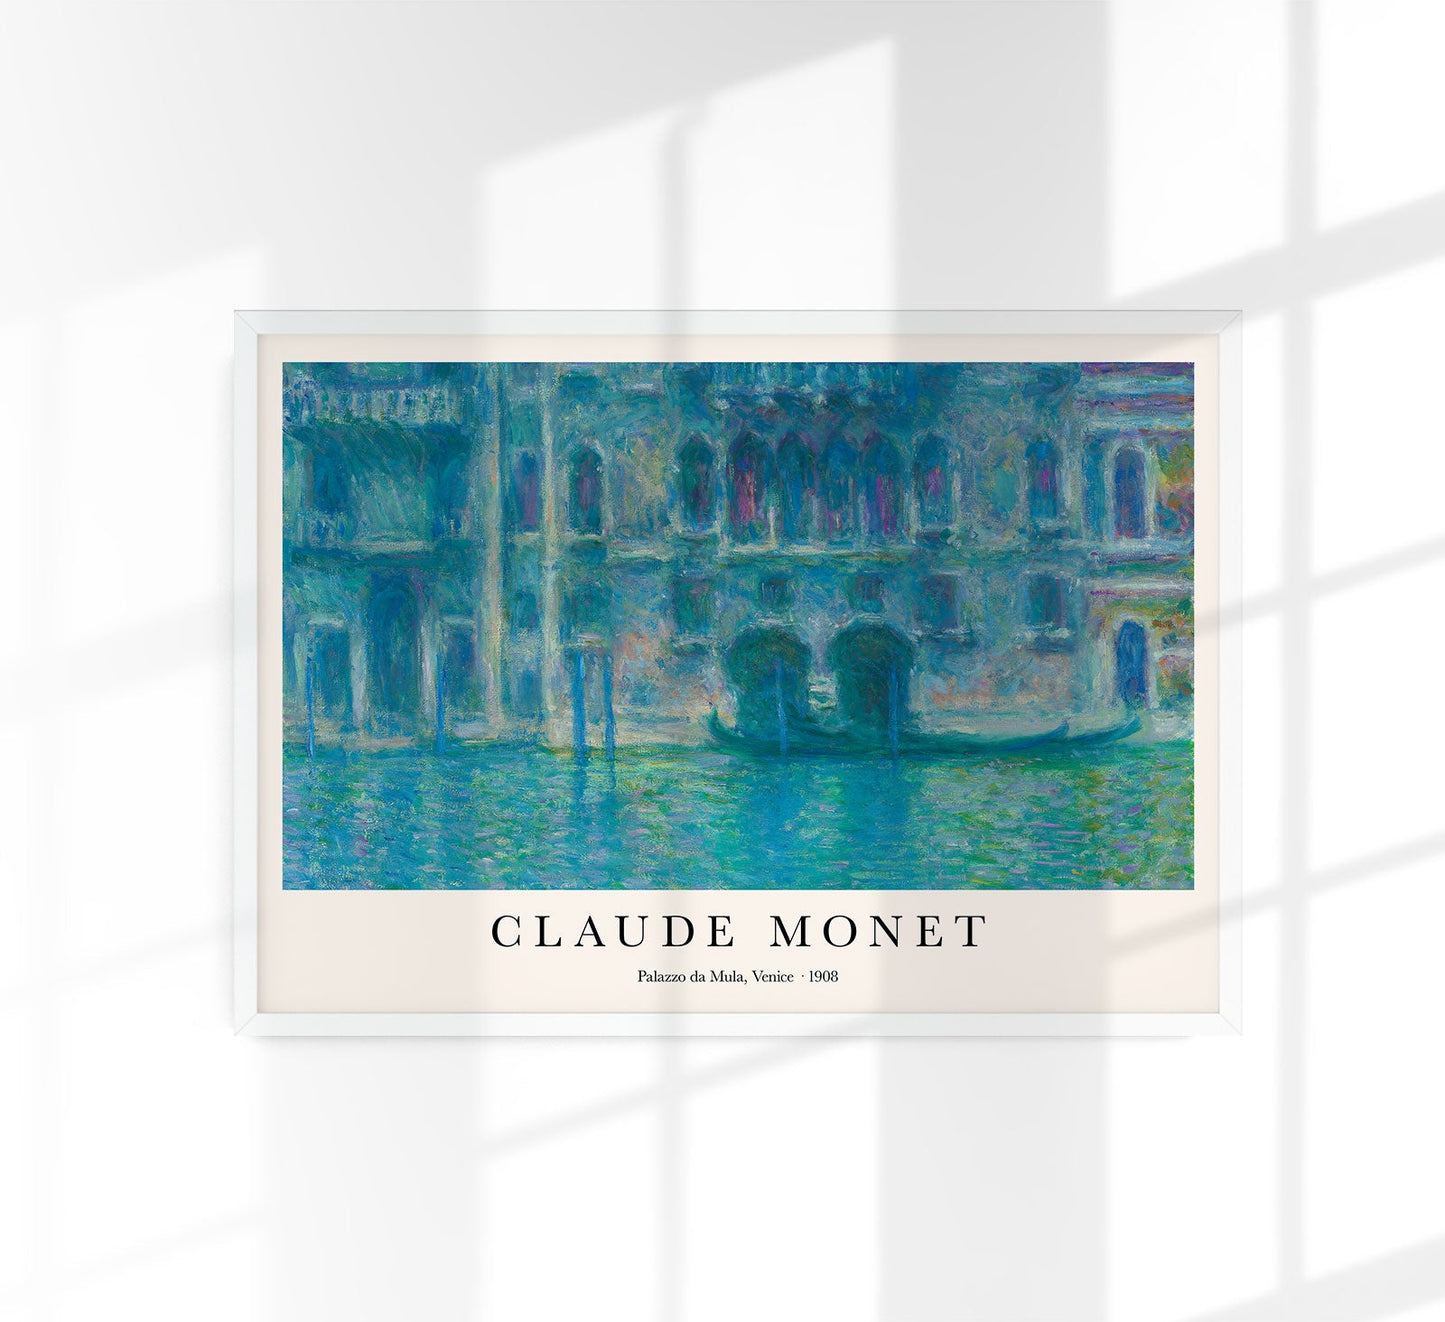 Palazzo da Mula, Venice by Claude Monet Art Exhibition Poster